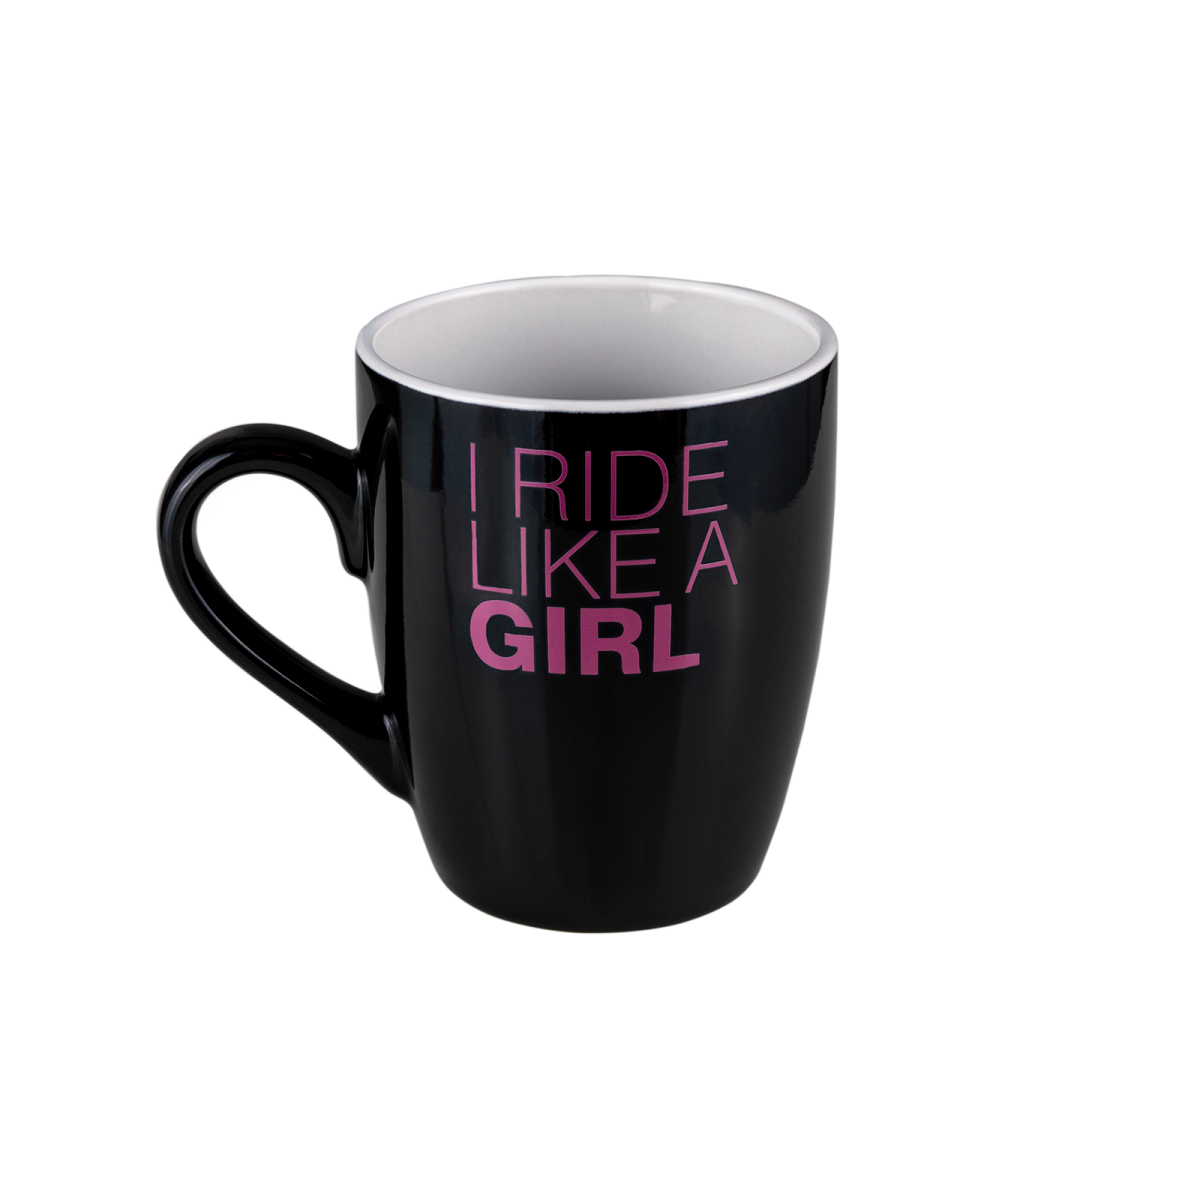 A black mug with pink logo "ride like a girl"